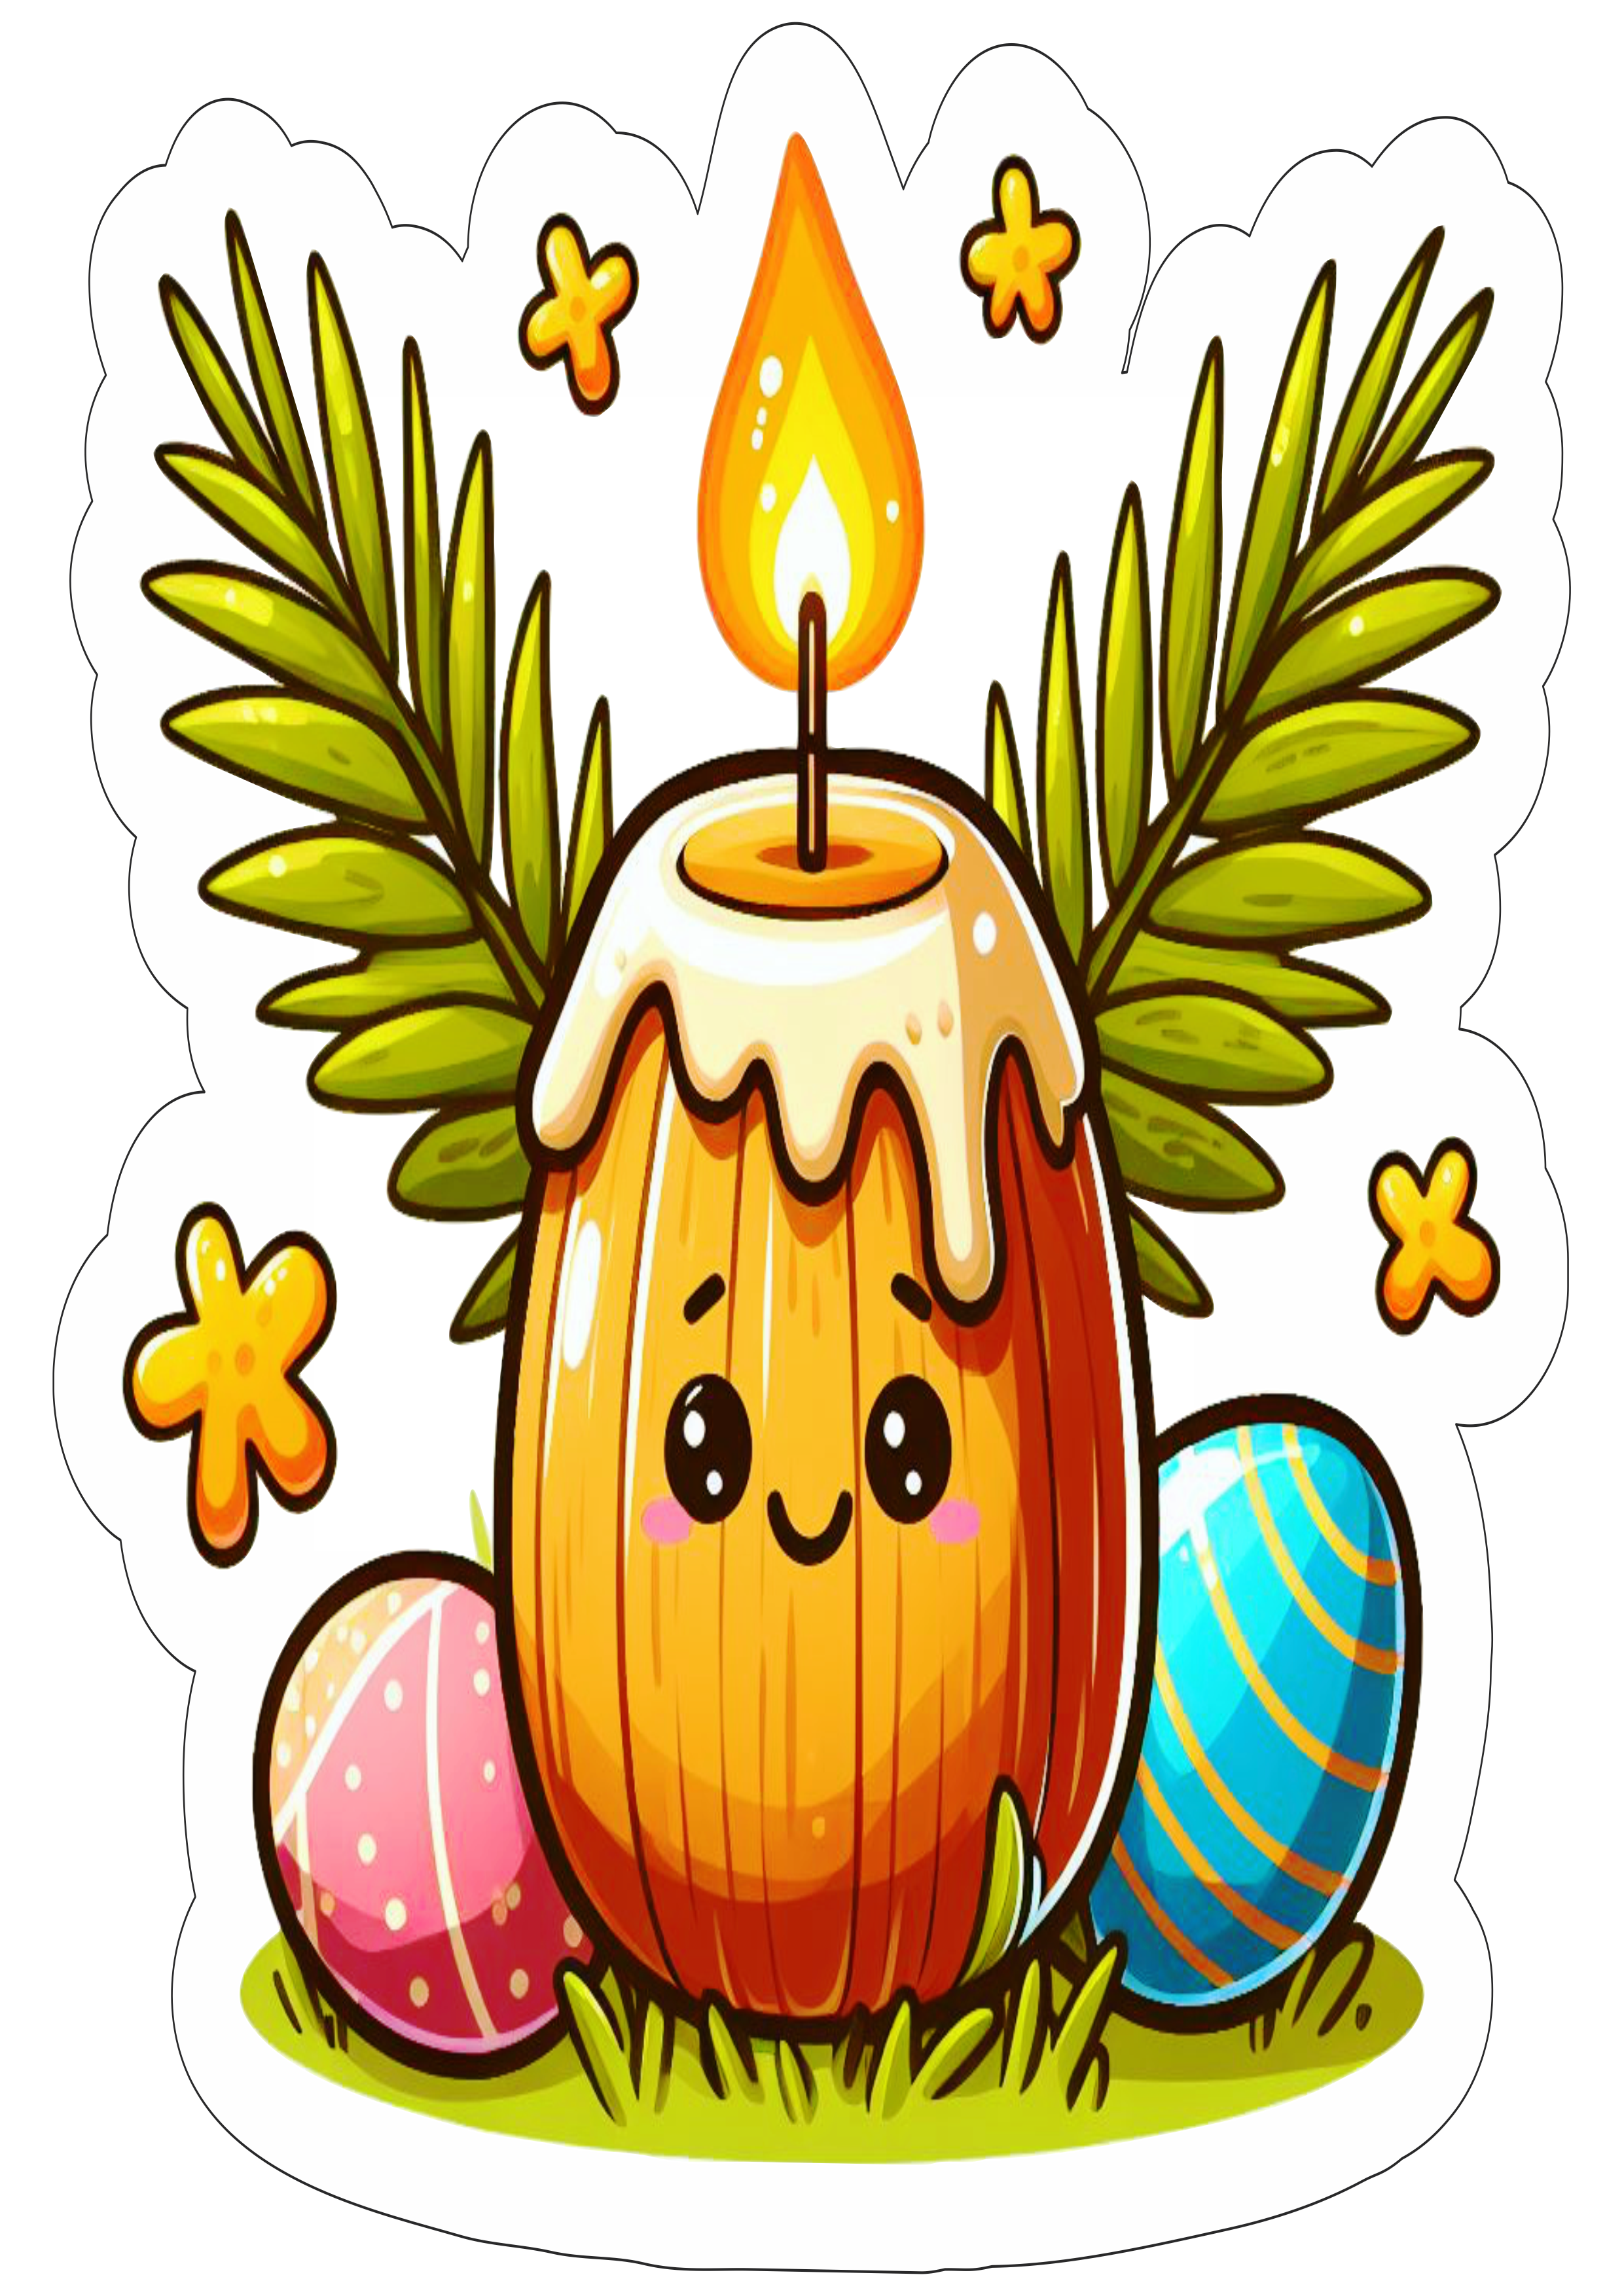 Símbolos da páscoa desenho vela colorida ramos fundo transparente com contorno artes gráficas ovos de chocolate free png